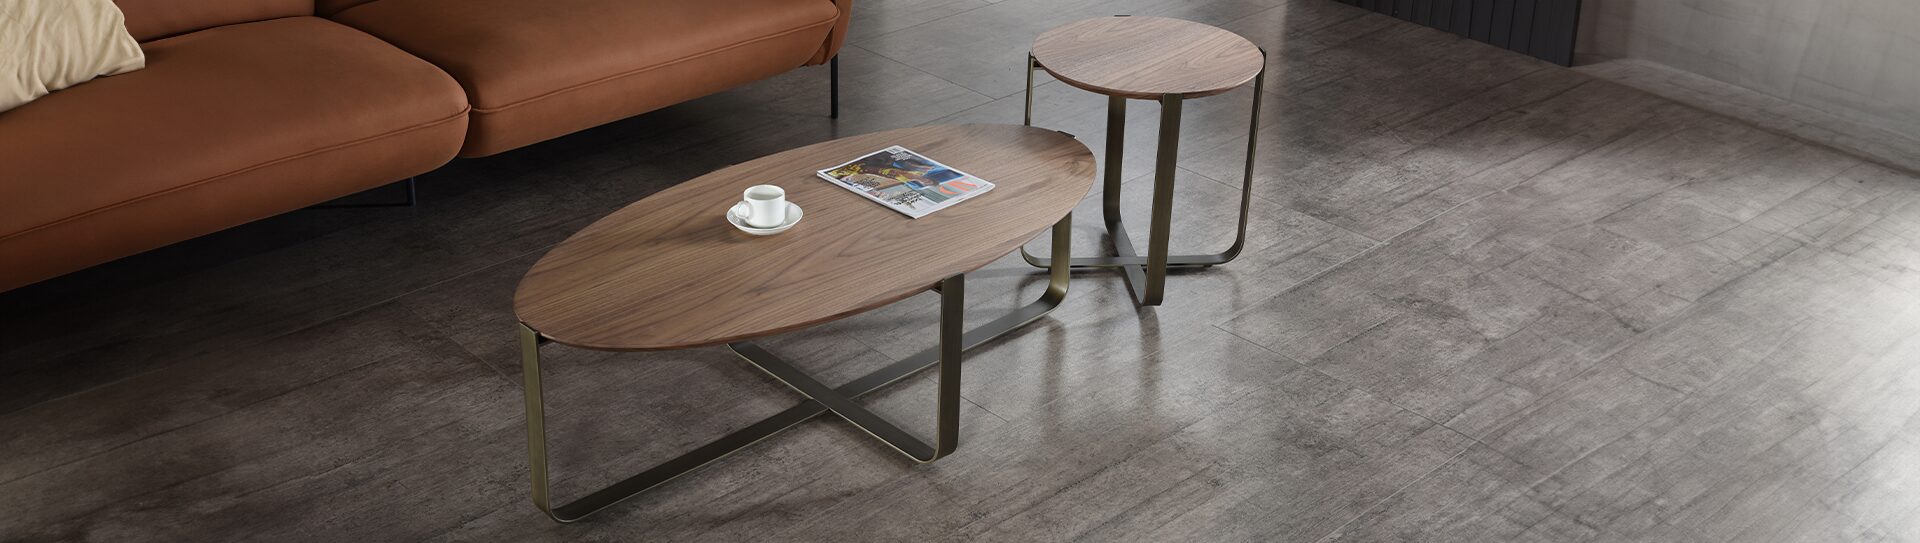 Table basse SEQUOIA Table basse marron ovale SEQUOIA Géant du Meuble dans un salon à côté d'une table basse ronde marron en bois